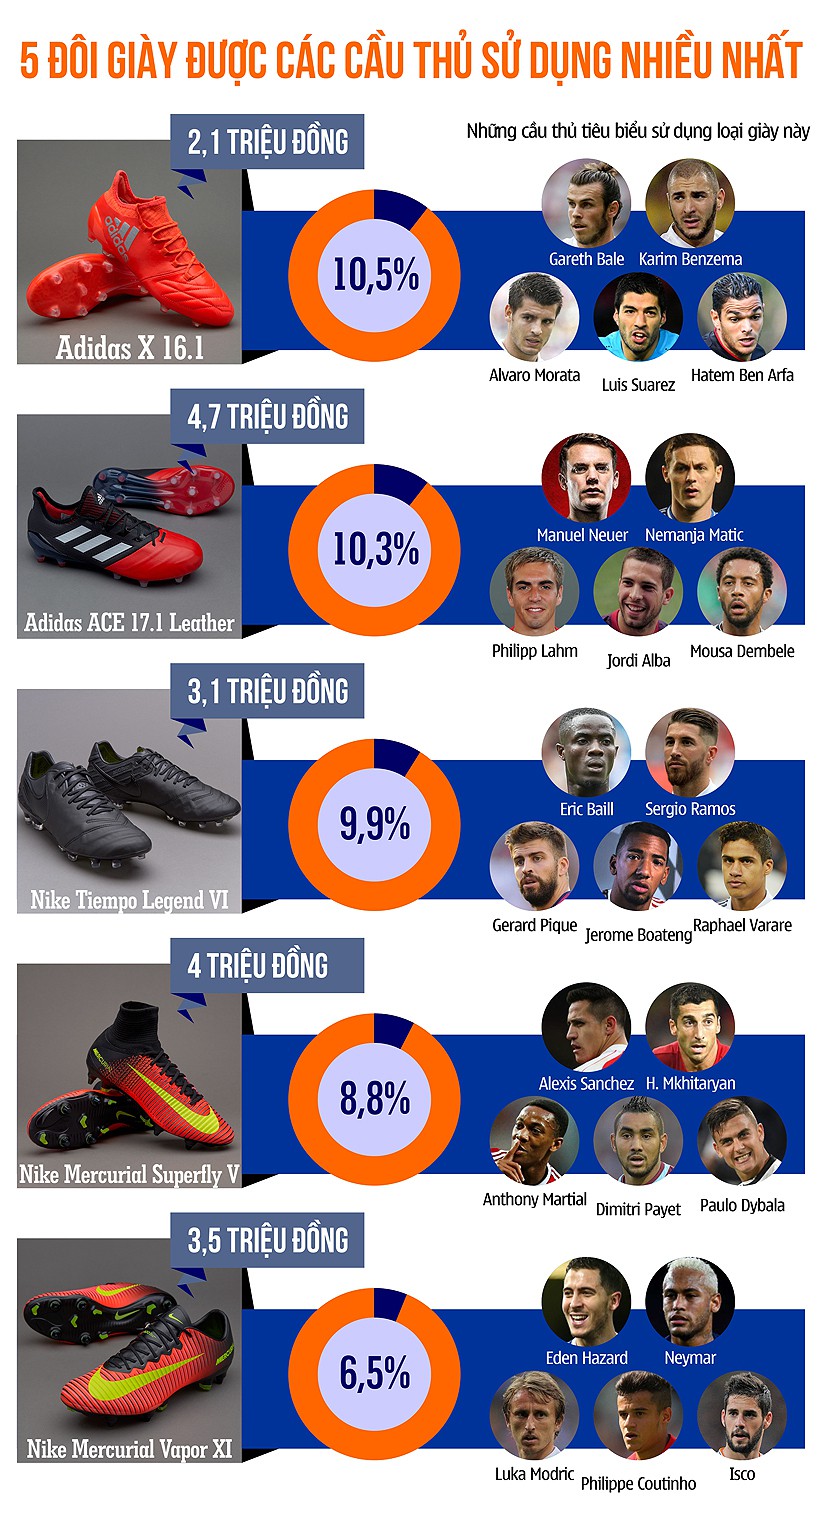 Gareth Bale dùng giày rẻ tiền hơn cả cầu thủ V.League